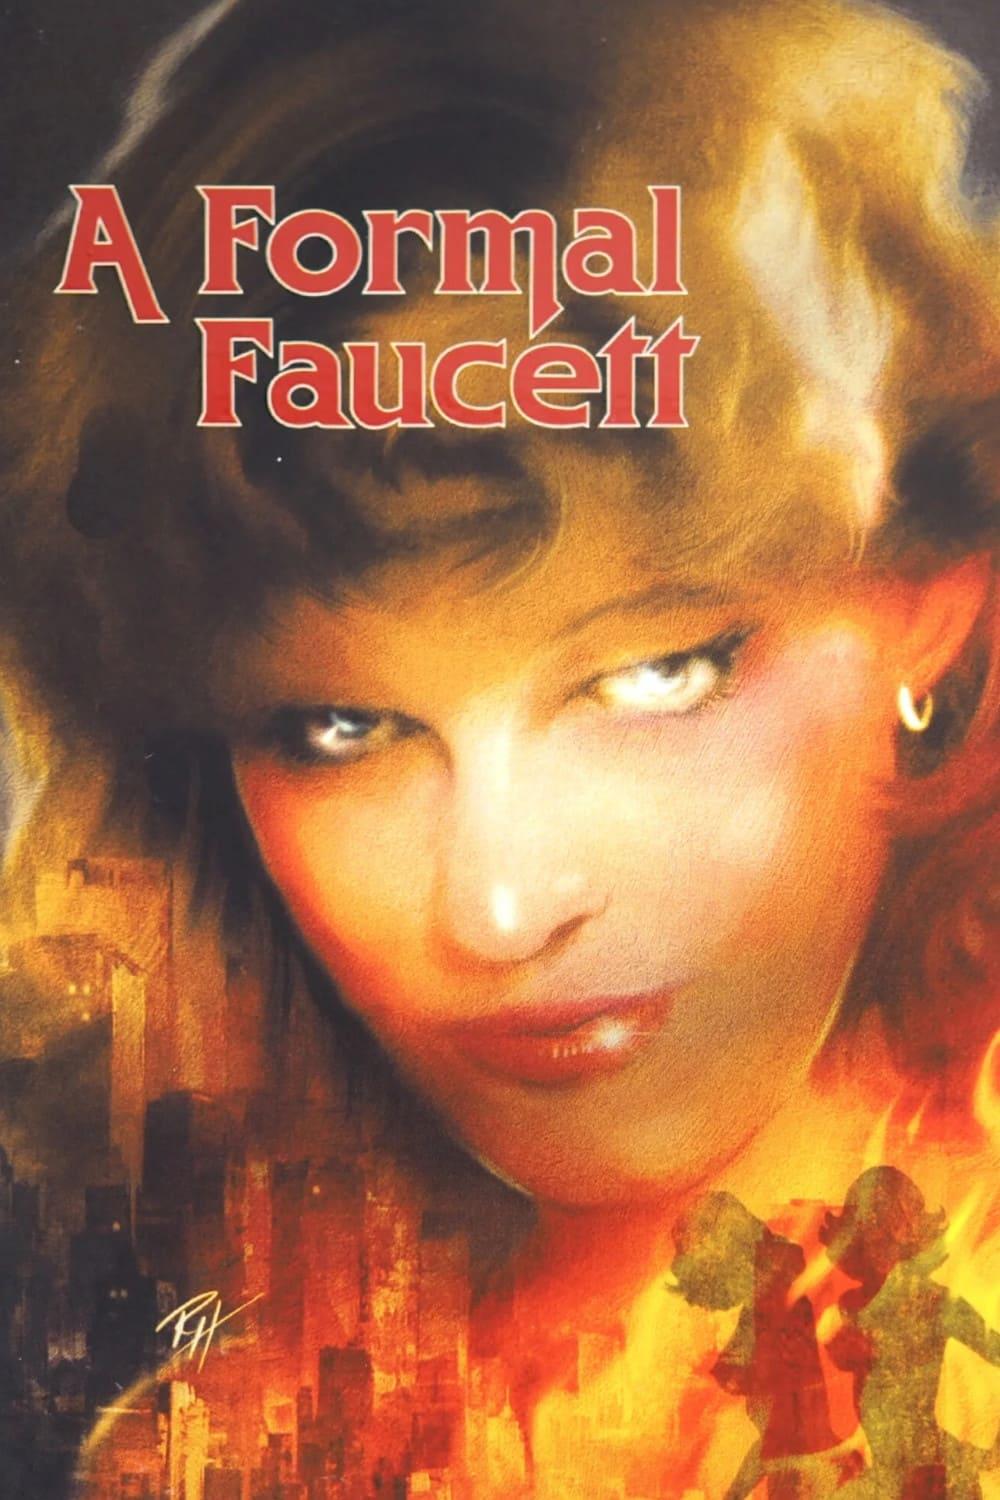 A Formal Faucett poster